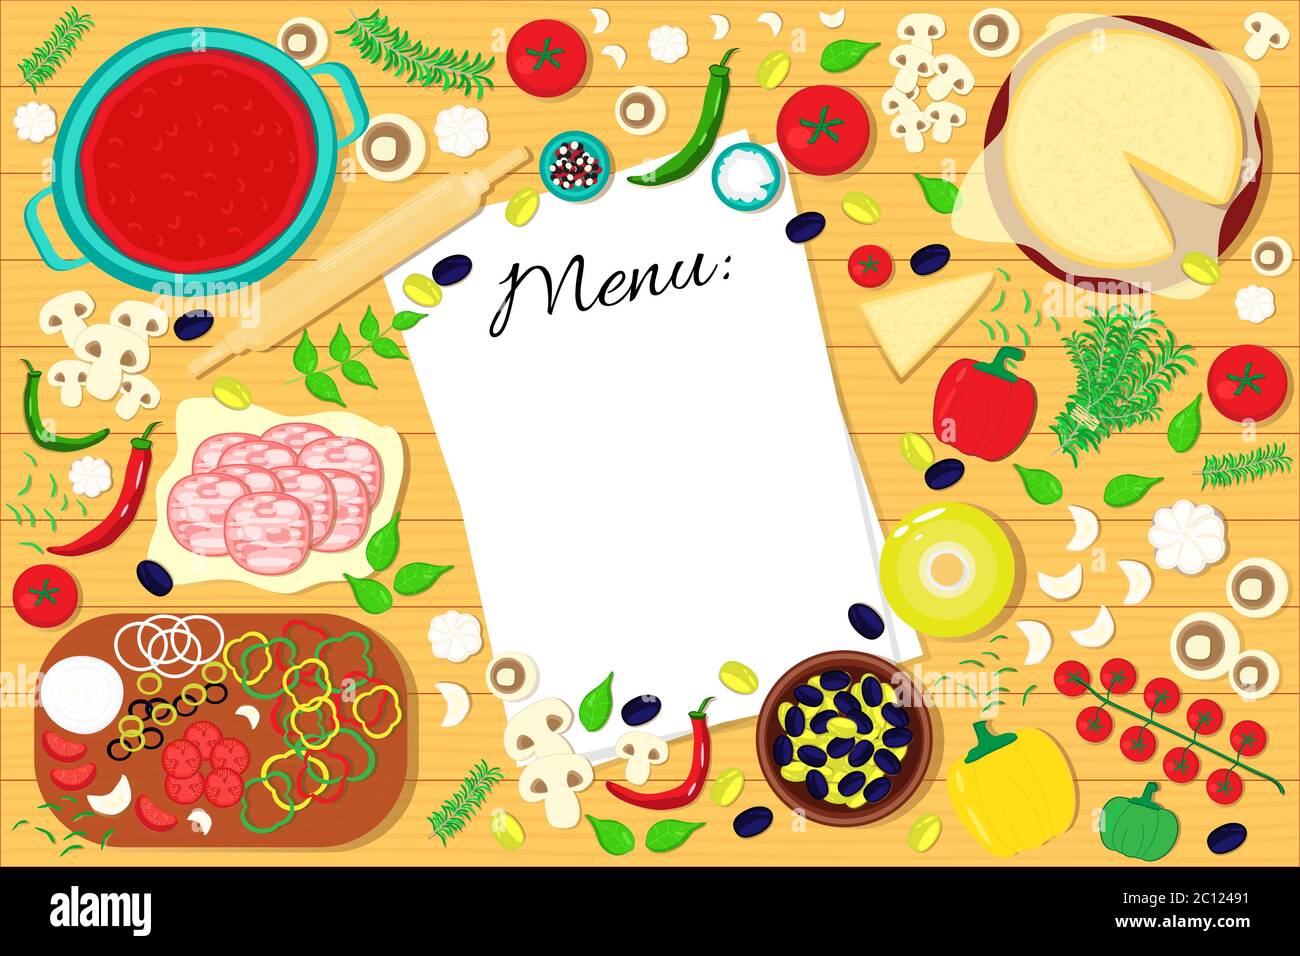 Lista de menús en la mesa con ingredientes de alimentos. Fondo de ilustración vectorial. Ilustración del Vector